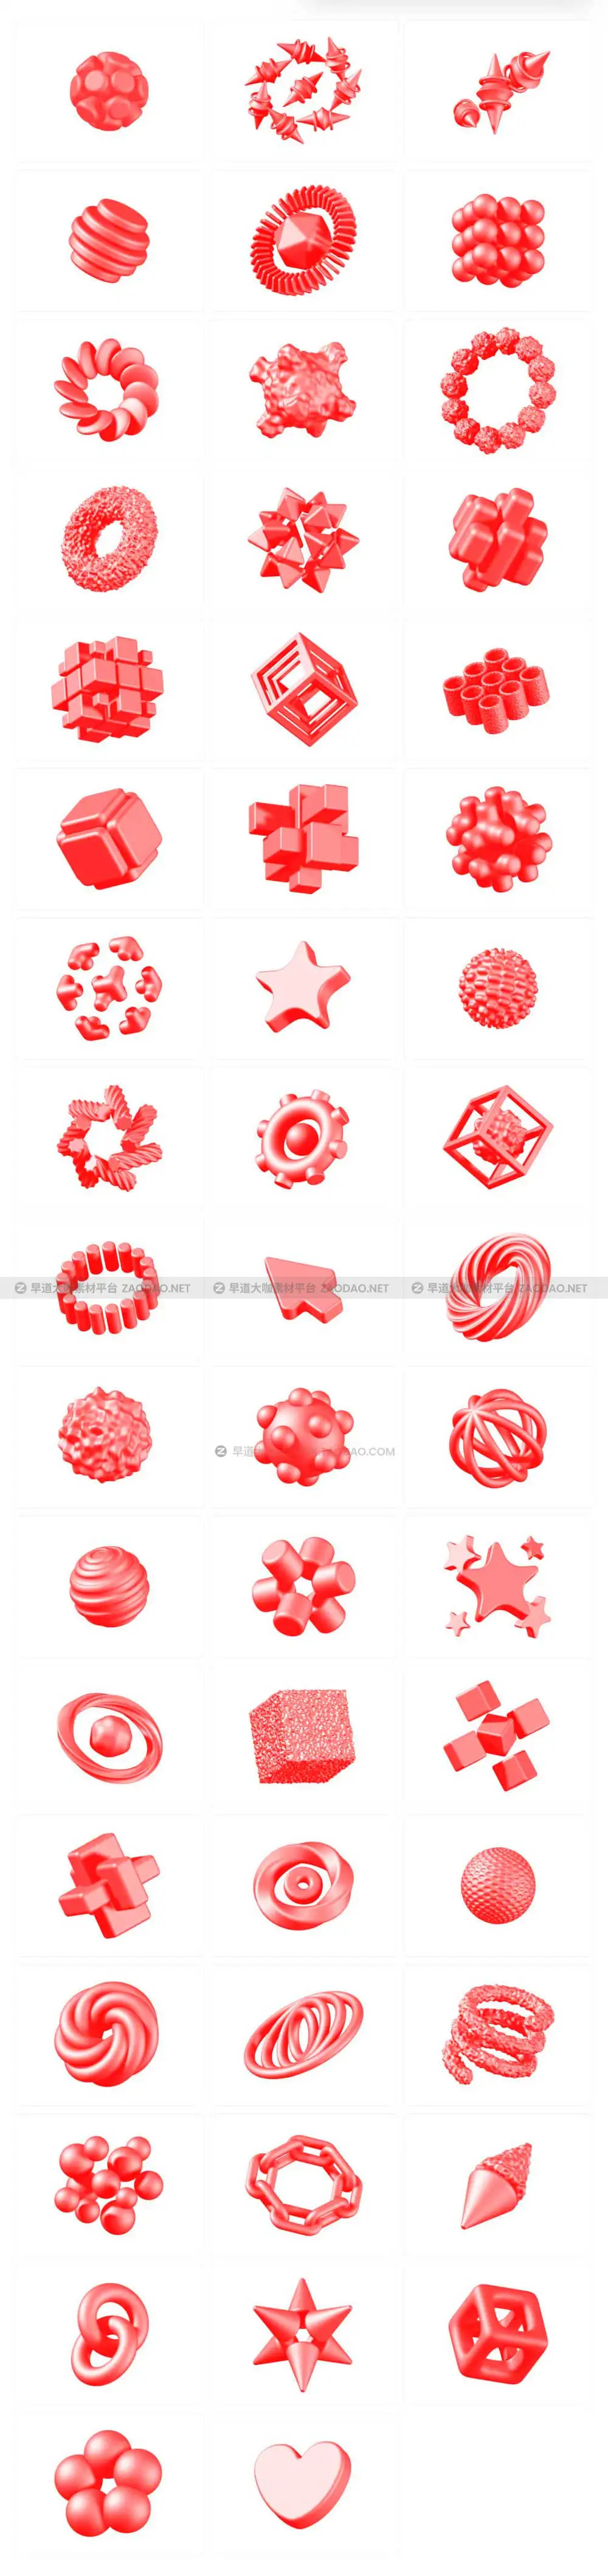 50款未来科幻科技三维立体3D抽象艺术图形符号图标PNG/Figma格式设计素材 3D Abstract Shapes插图6